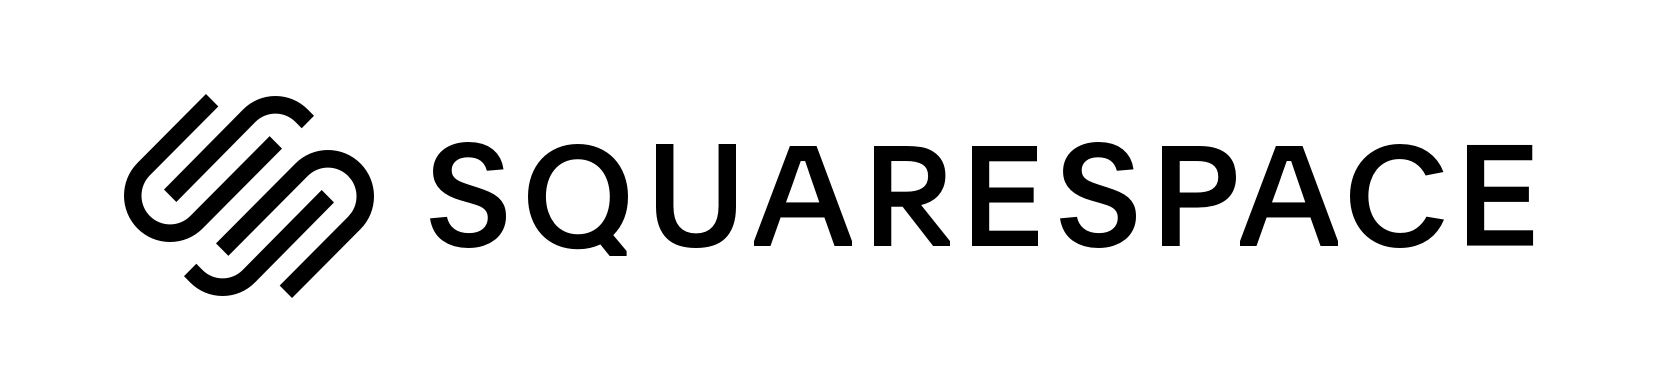 squarespace logo horizontal black - Điều Kỳ lạ Nhất Một Người Đã Nói Với Bạn Về Đám Cưới Của Họ Là Gì?